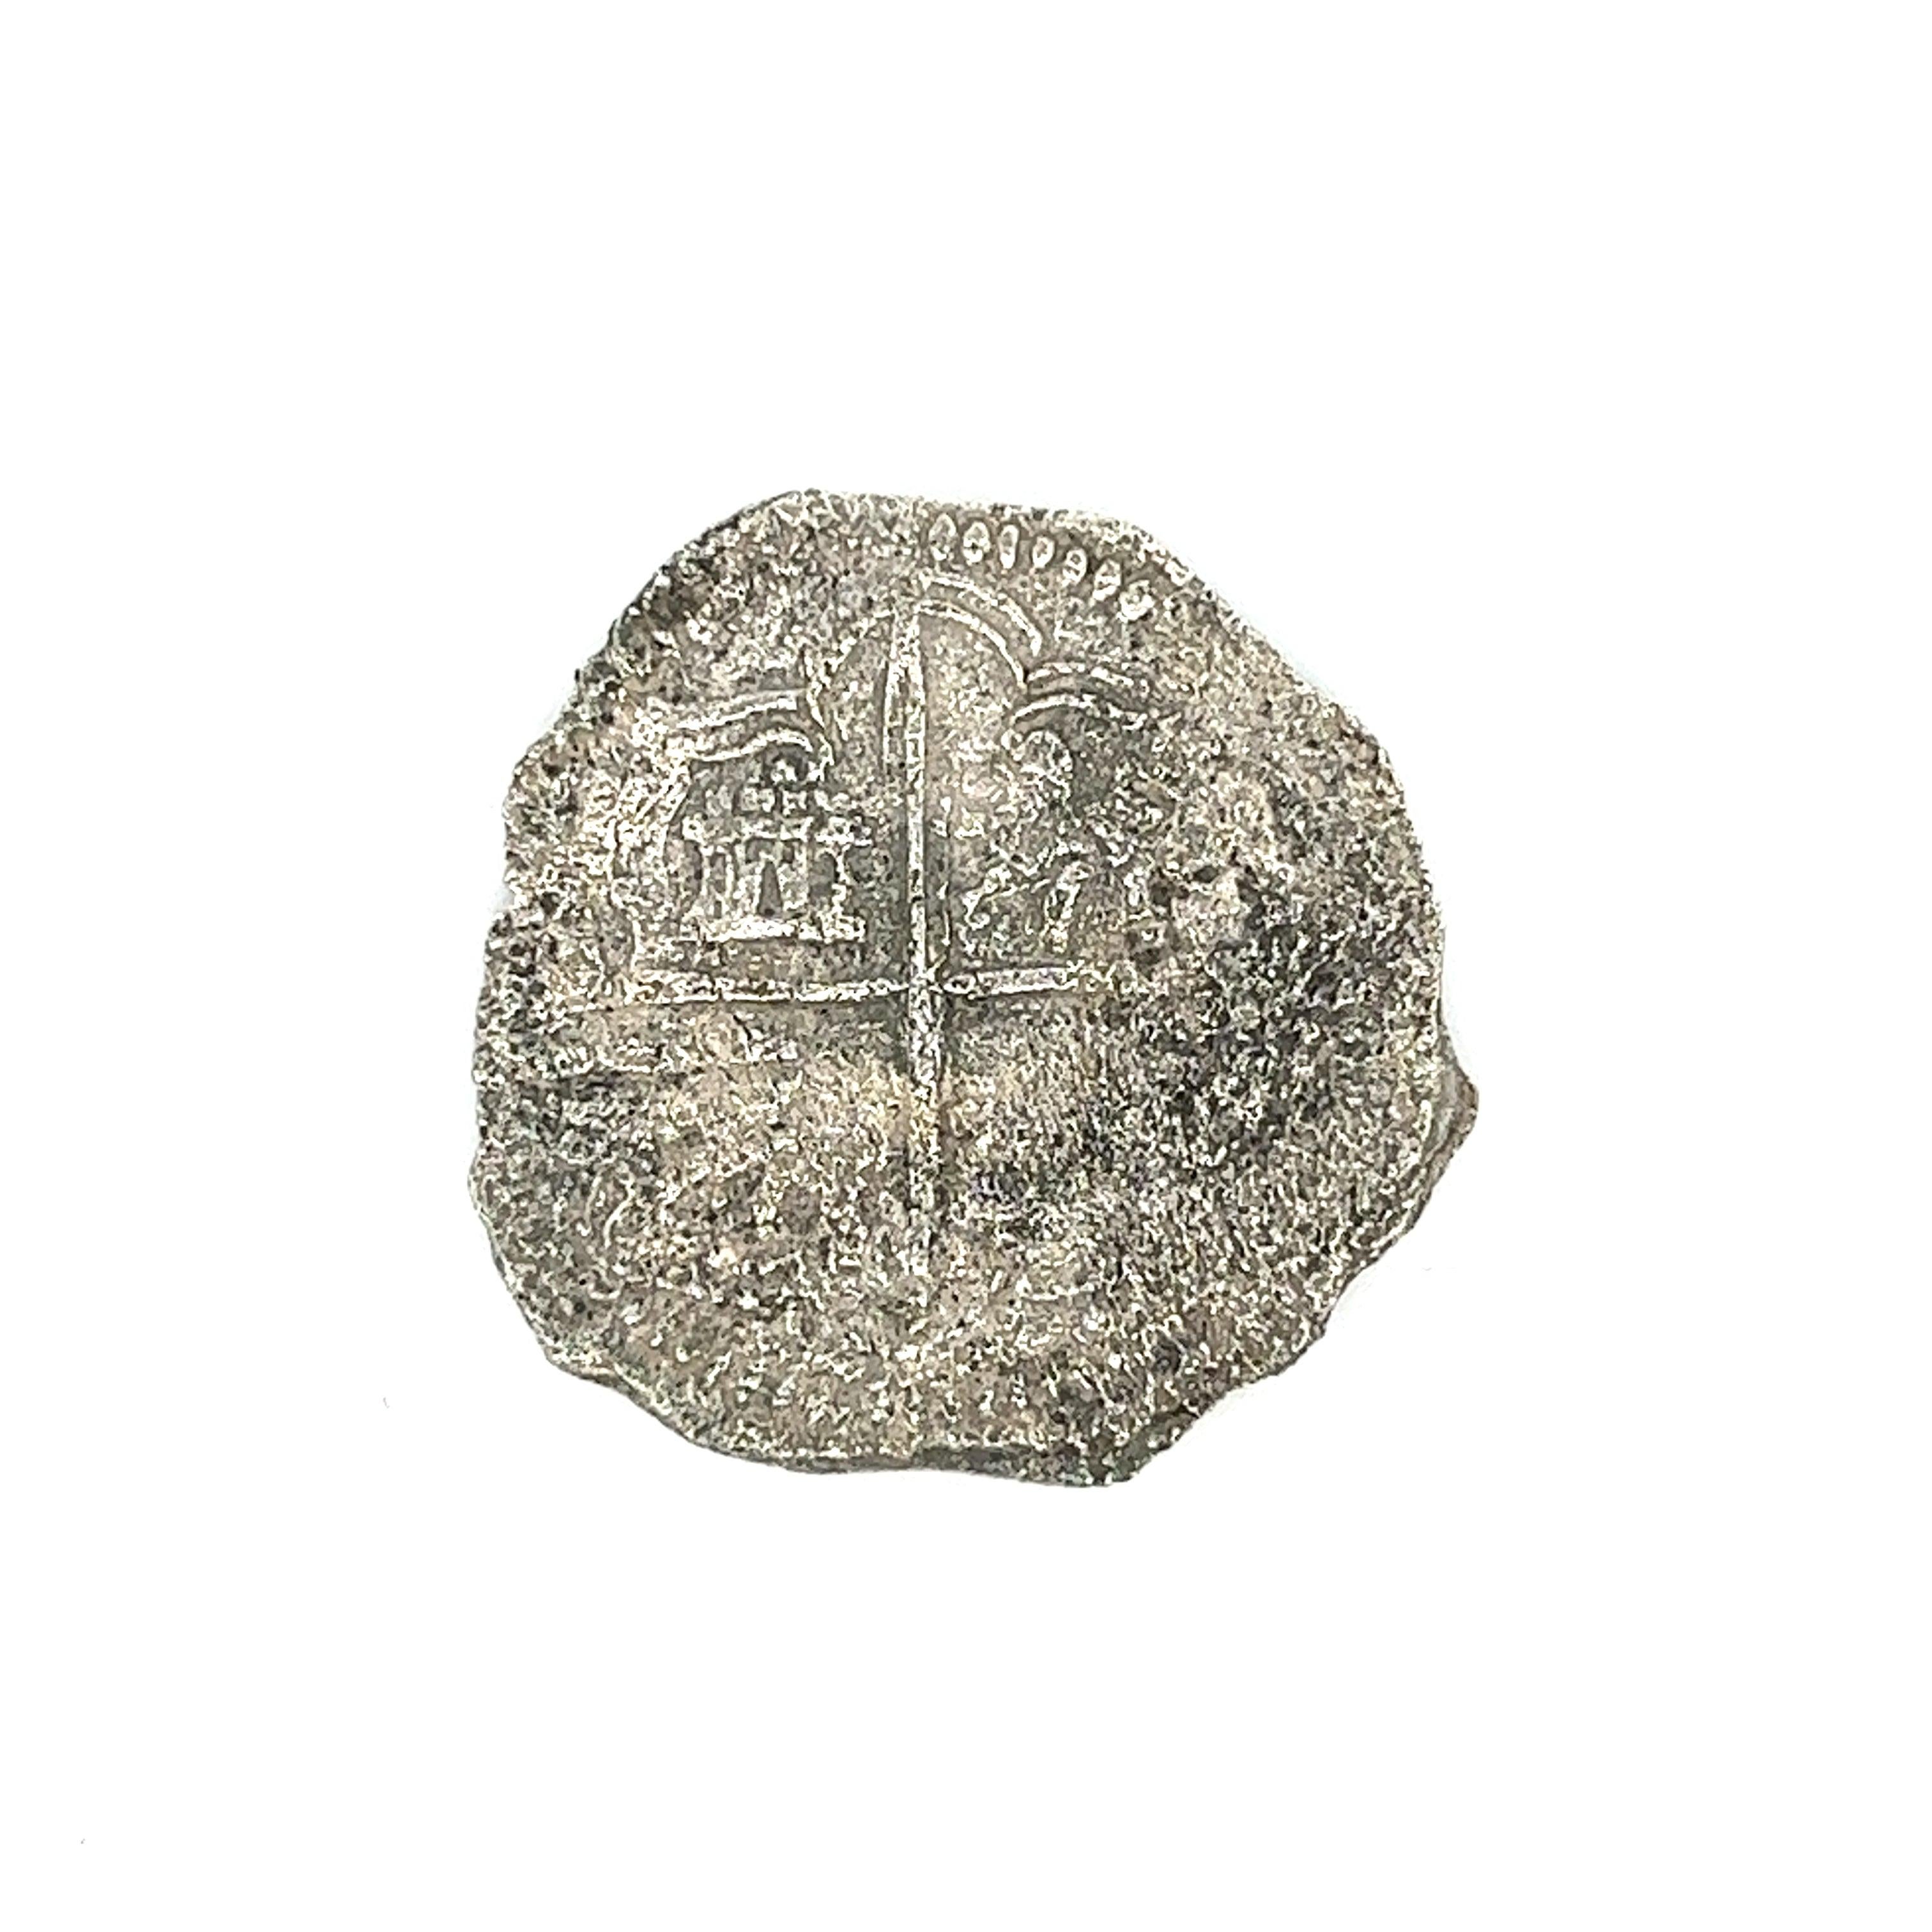 Original Atocha Shipwreck Coin 4 Reale Grade 3 Potosi Mint 

Le nom Potosi Mint signifie que la pièce a été frappée dans le nord du Pérou, dans l'actuelle Bolivie. 

La dénomination 4 Reale devient de plus en plus rare : la plupart des pièces à bord